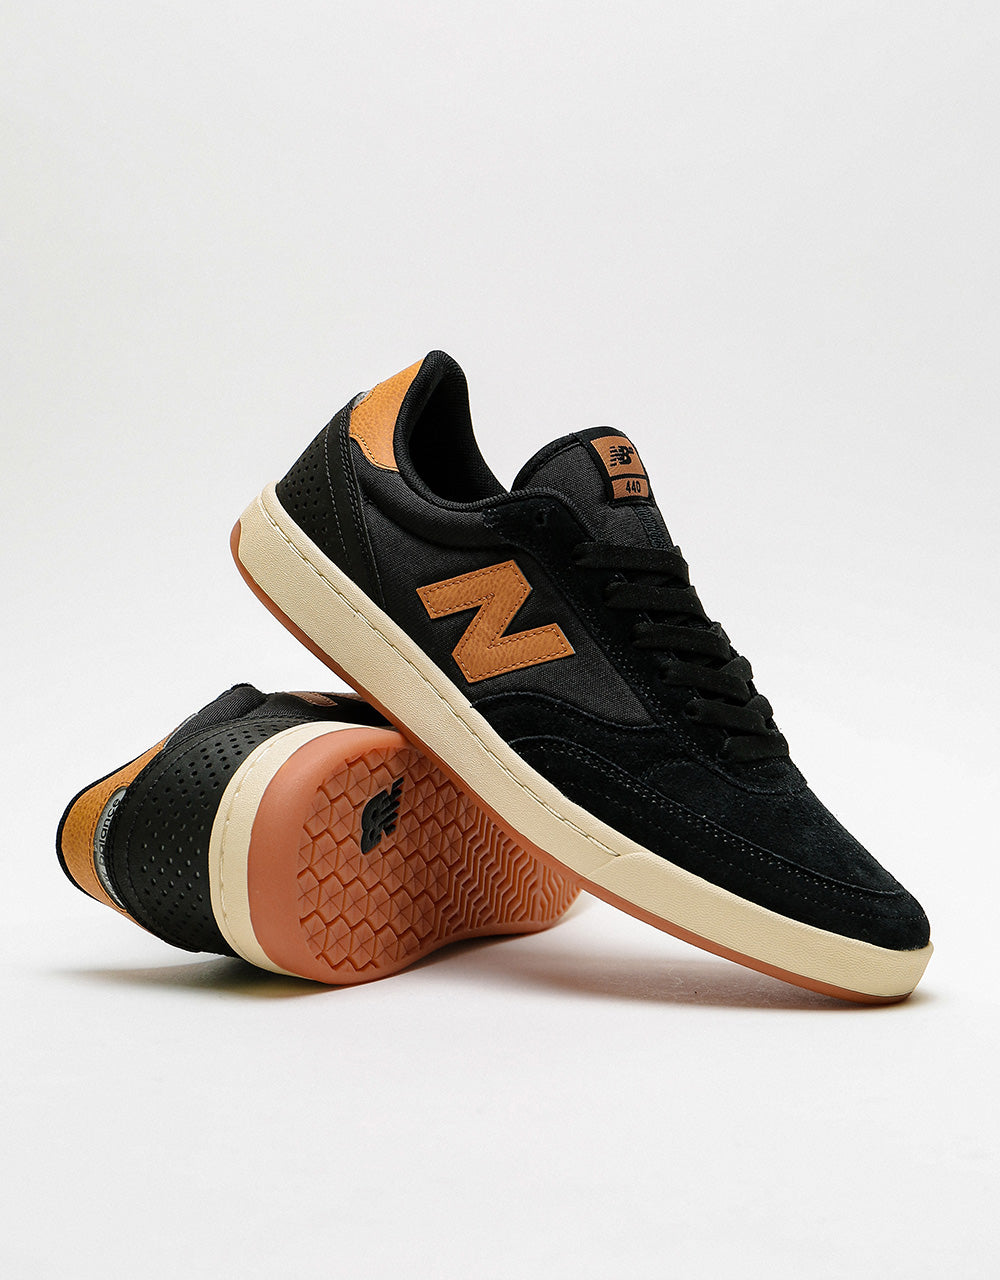 New Balance Numeric 440 Skate Shoes - Black/Tan